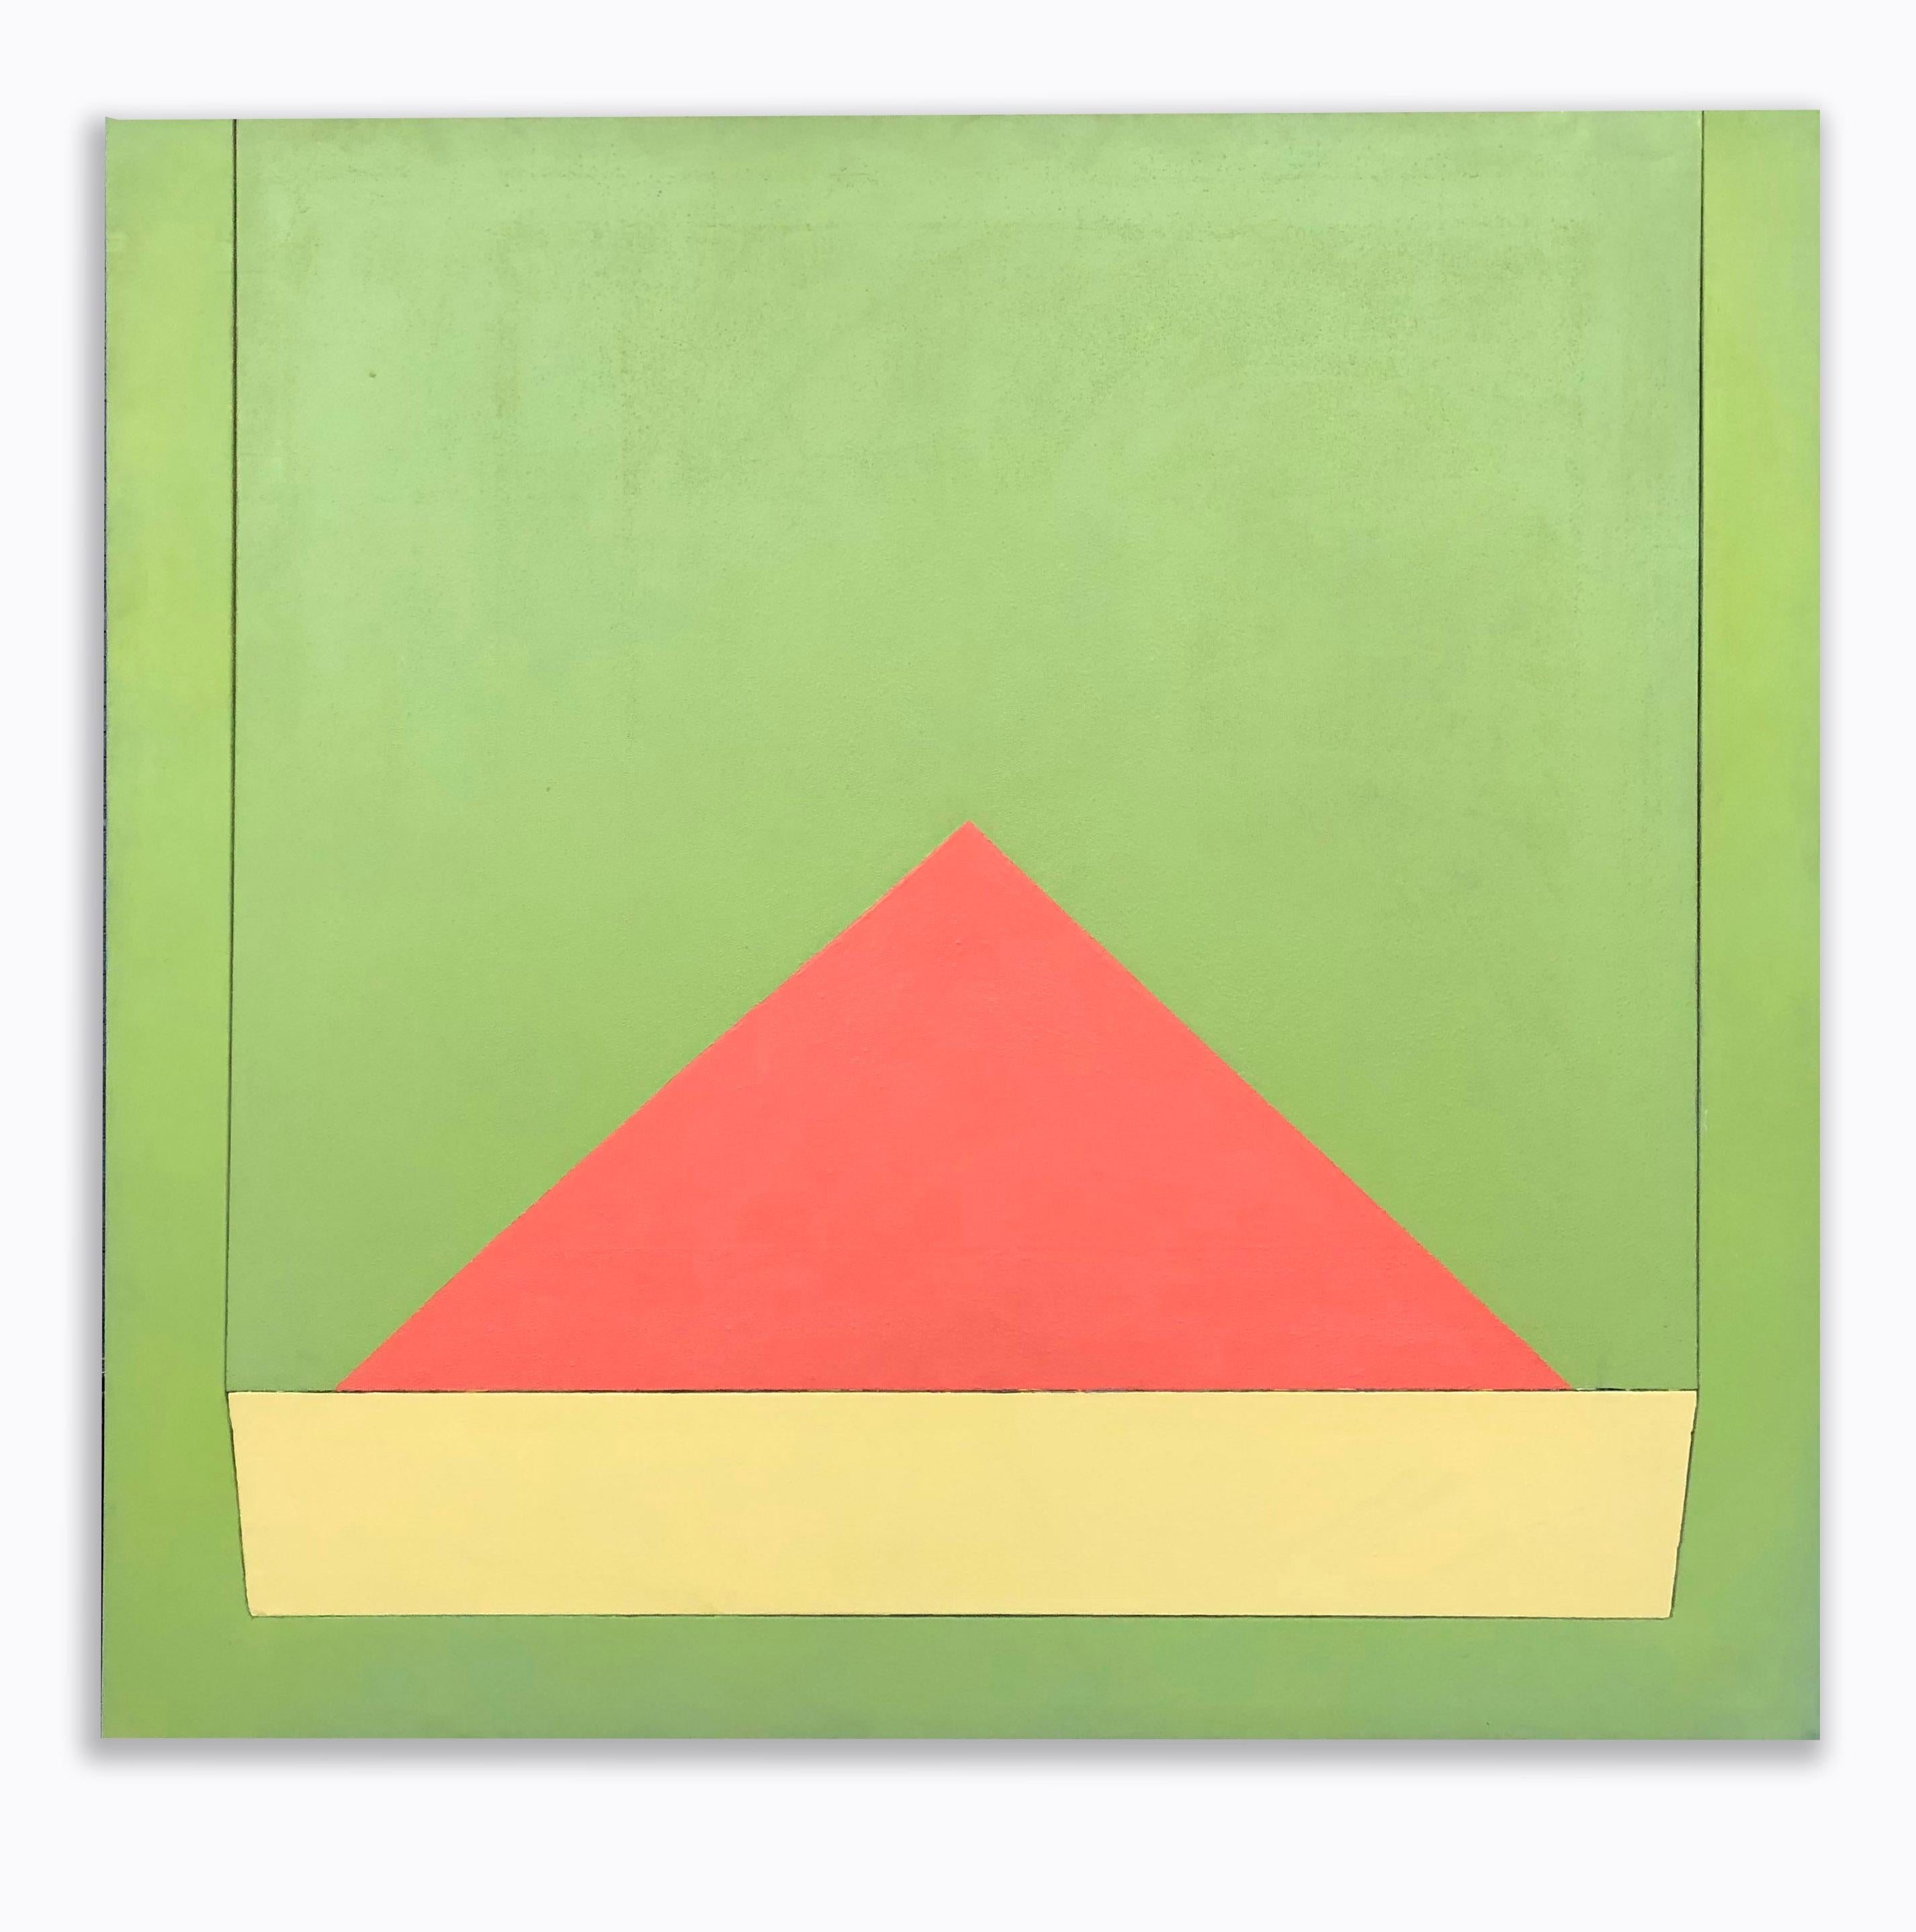 Une peinture abstraite géométrique moderne du milieu du siècle intitulée Beacon par l'artiste américain Richard Huntington.  Cette œuvre présente des couleurs audacieuses et une texture incroyable.

Richard Huntington (né en 1936) est un peintre,